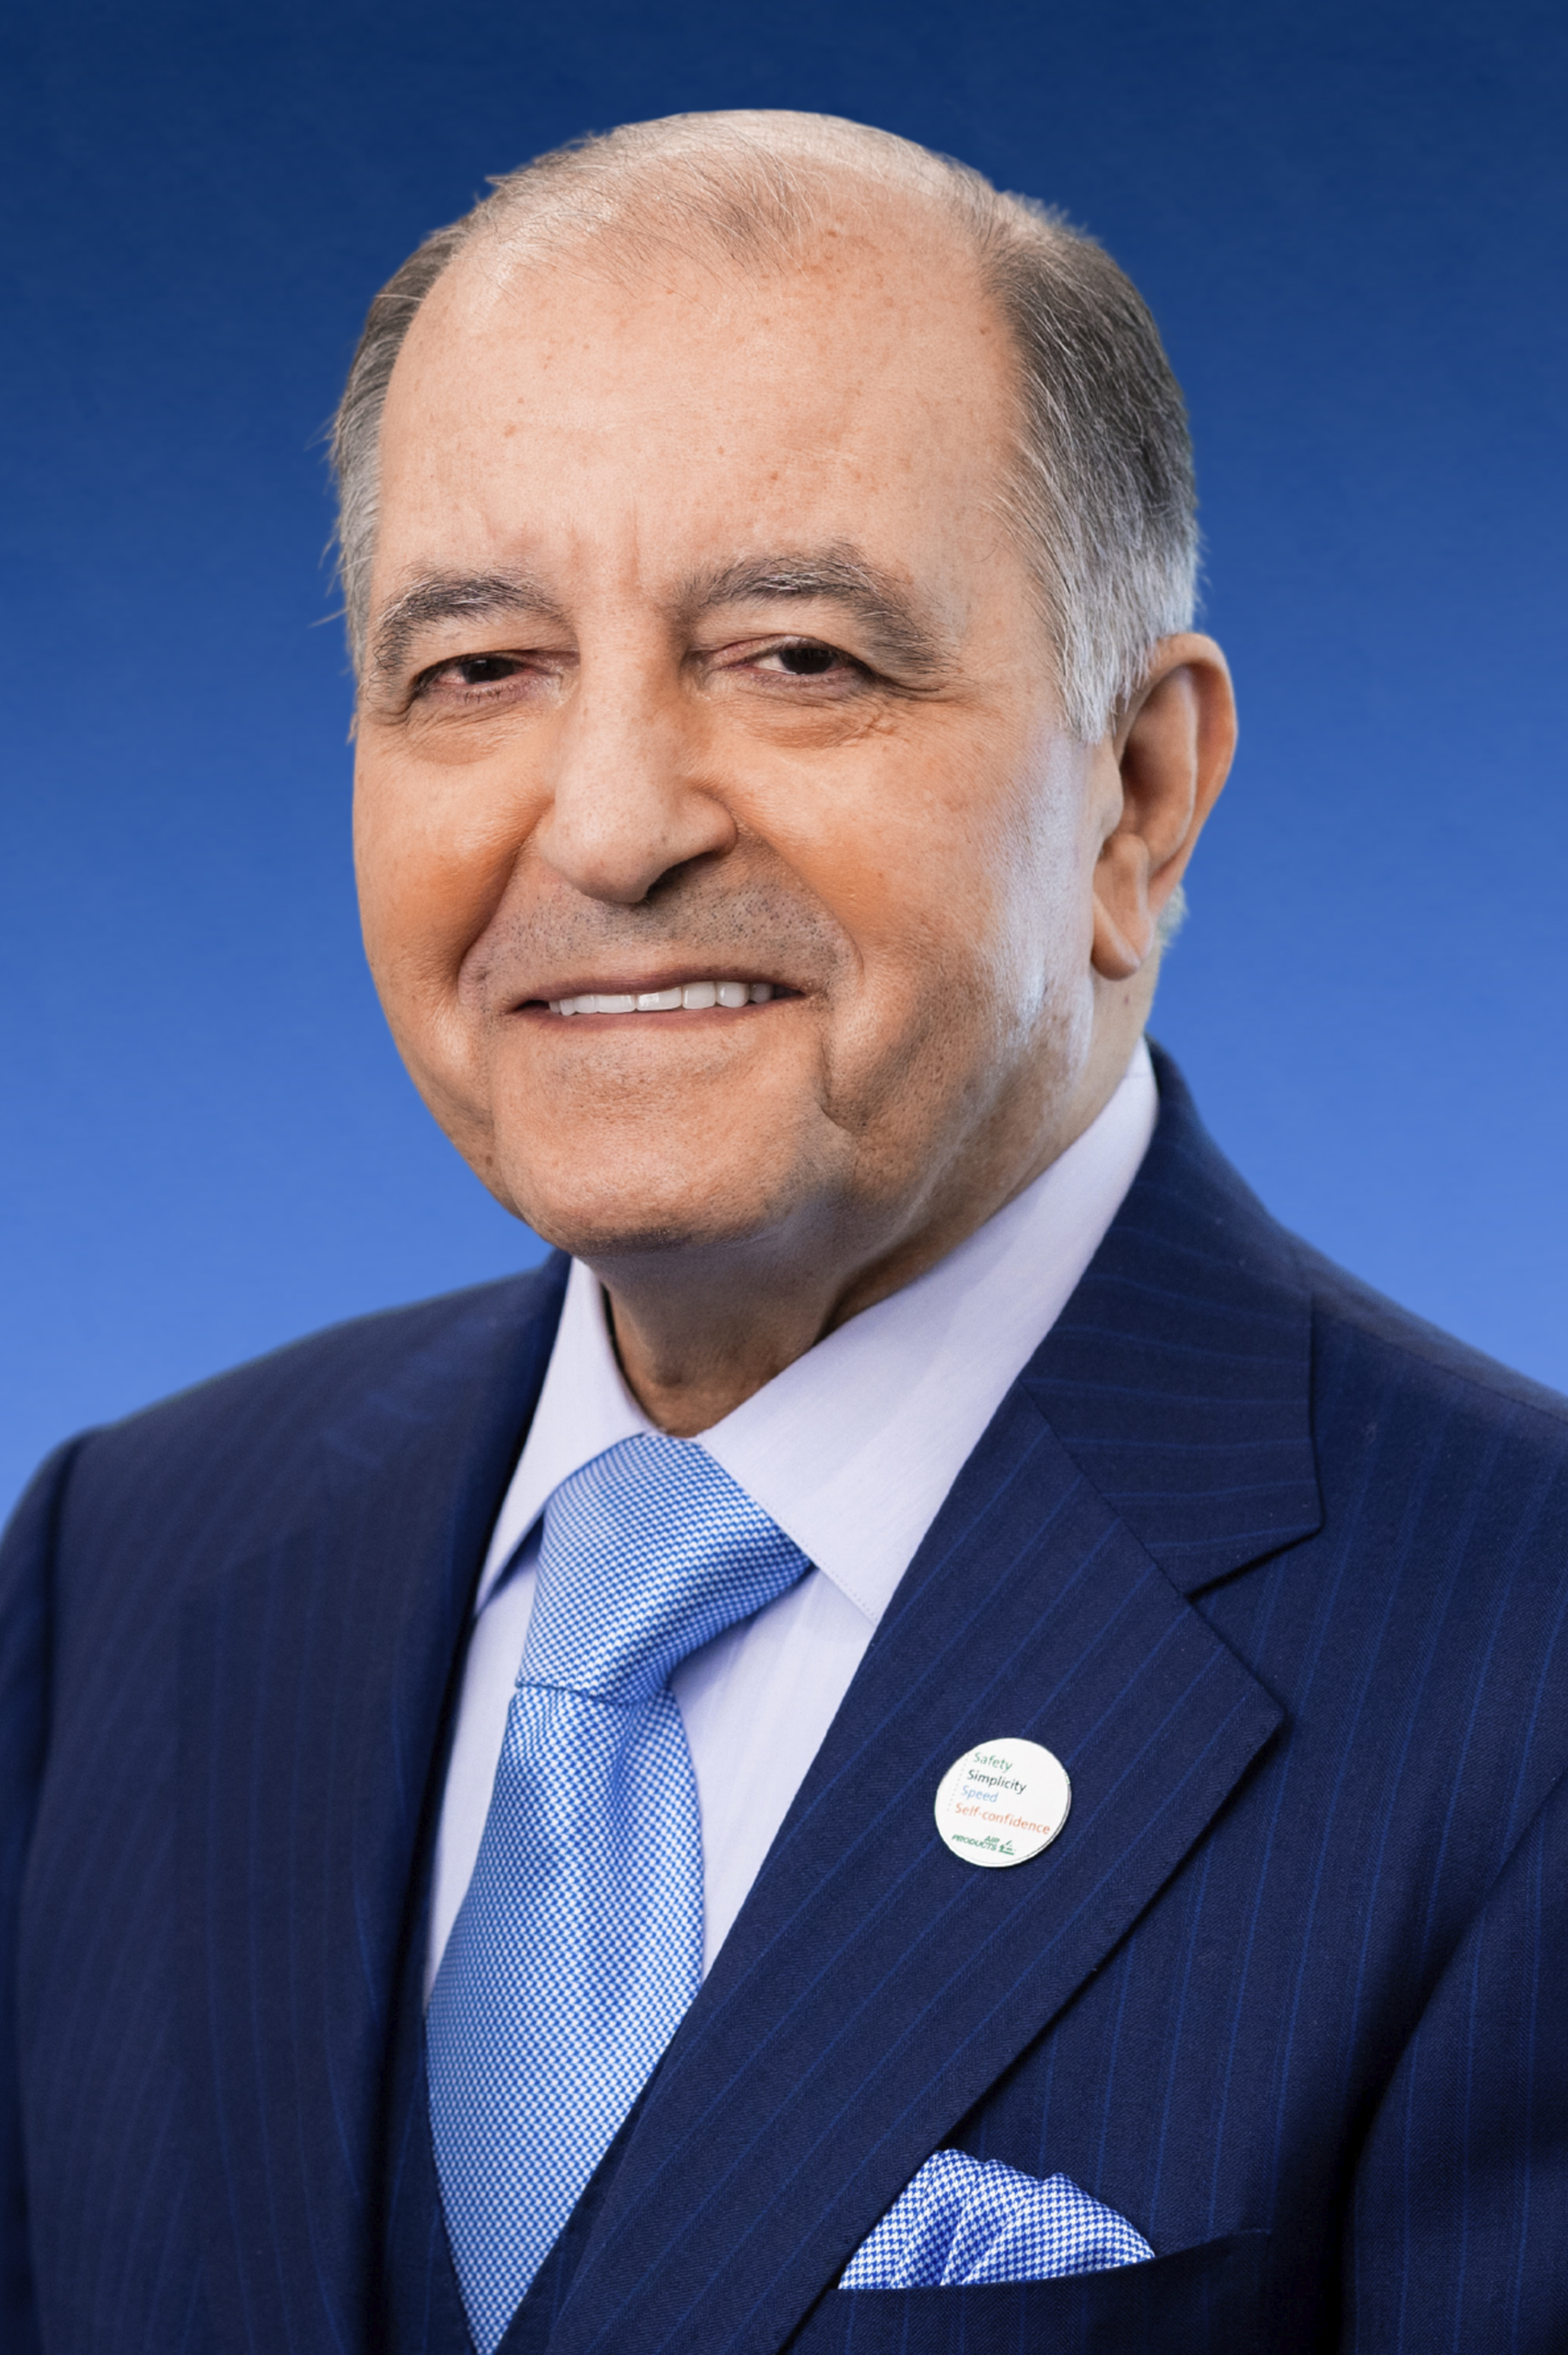 Seifi Ghasemi, Vorstandsvorsitzender, Präsident und CEO von Air Products; Bildquelle: Air Products